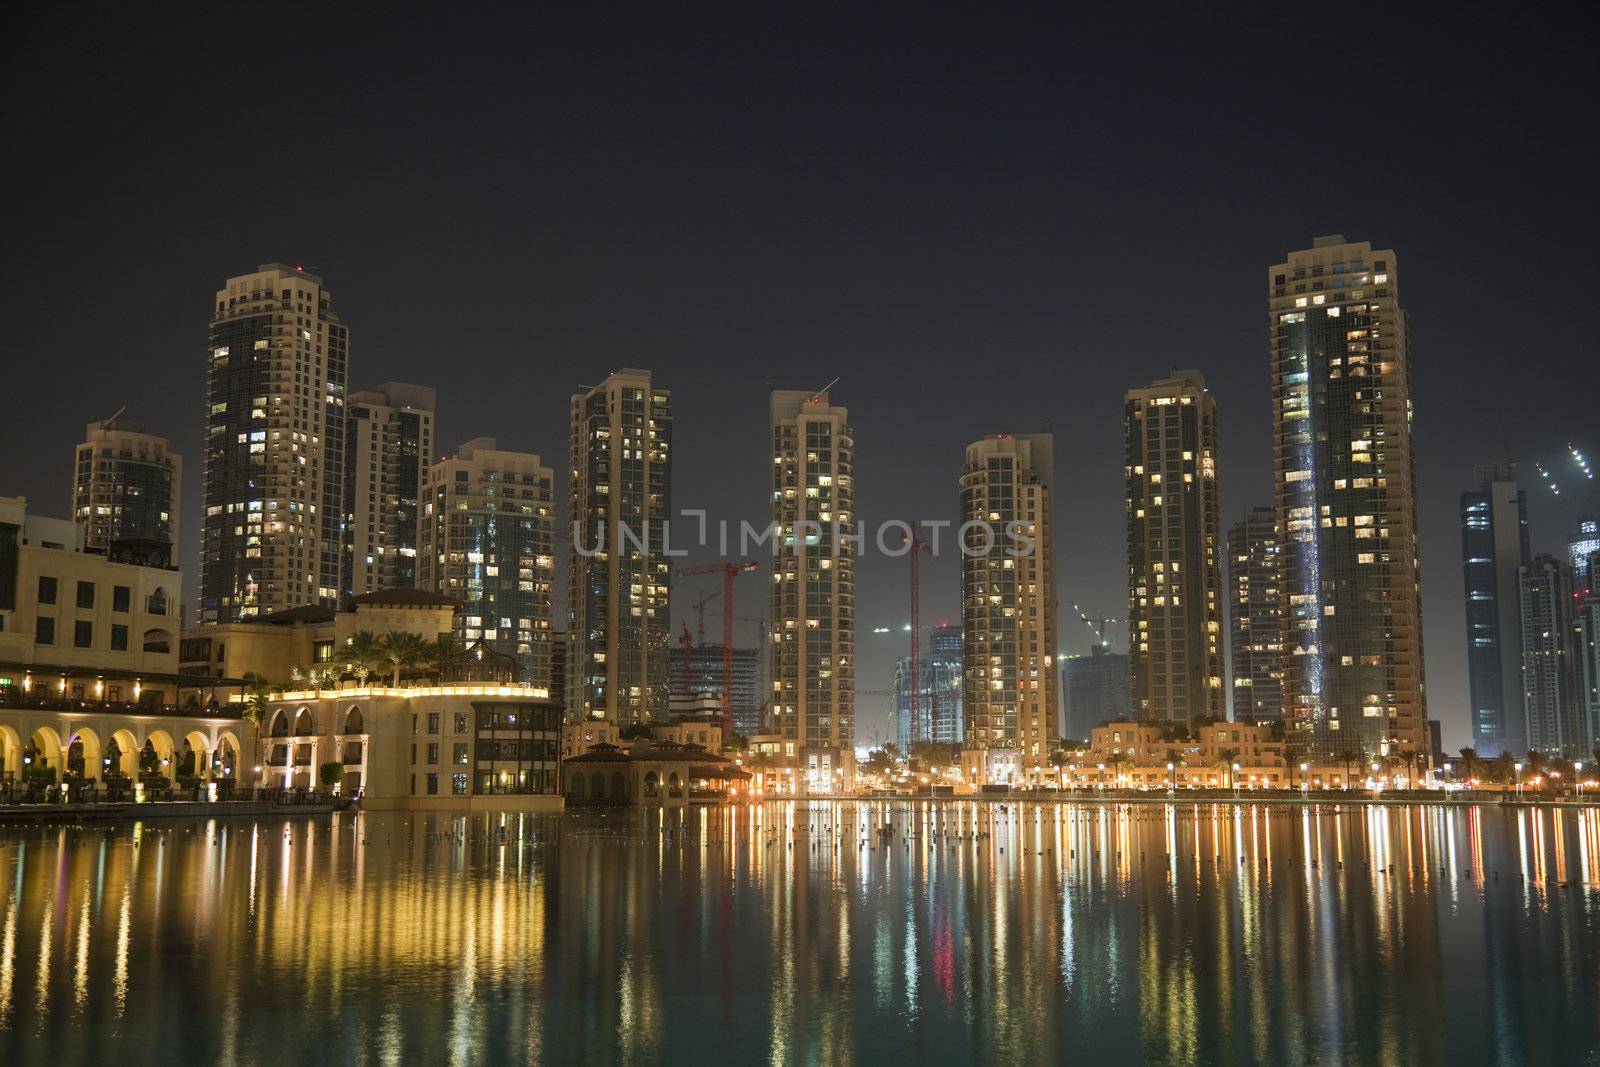 Night image of Dubai skyline, United Arab Emirates.
